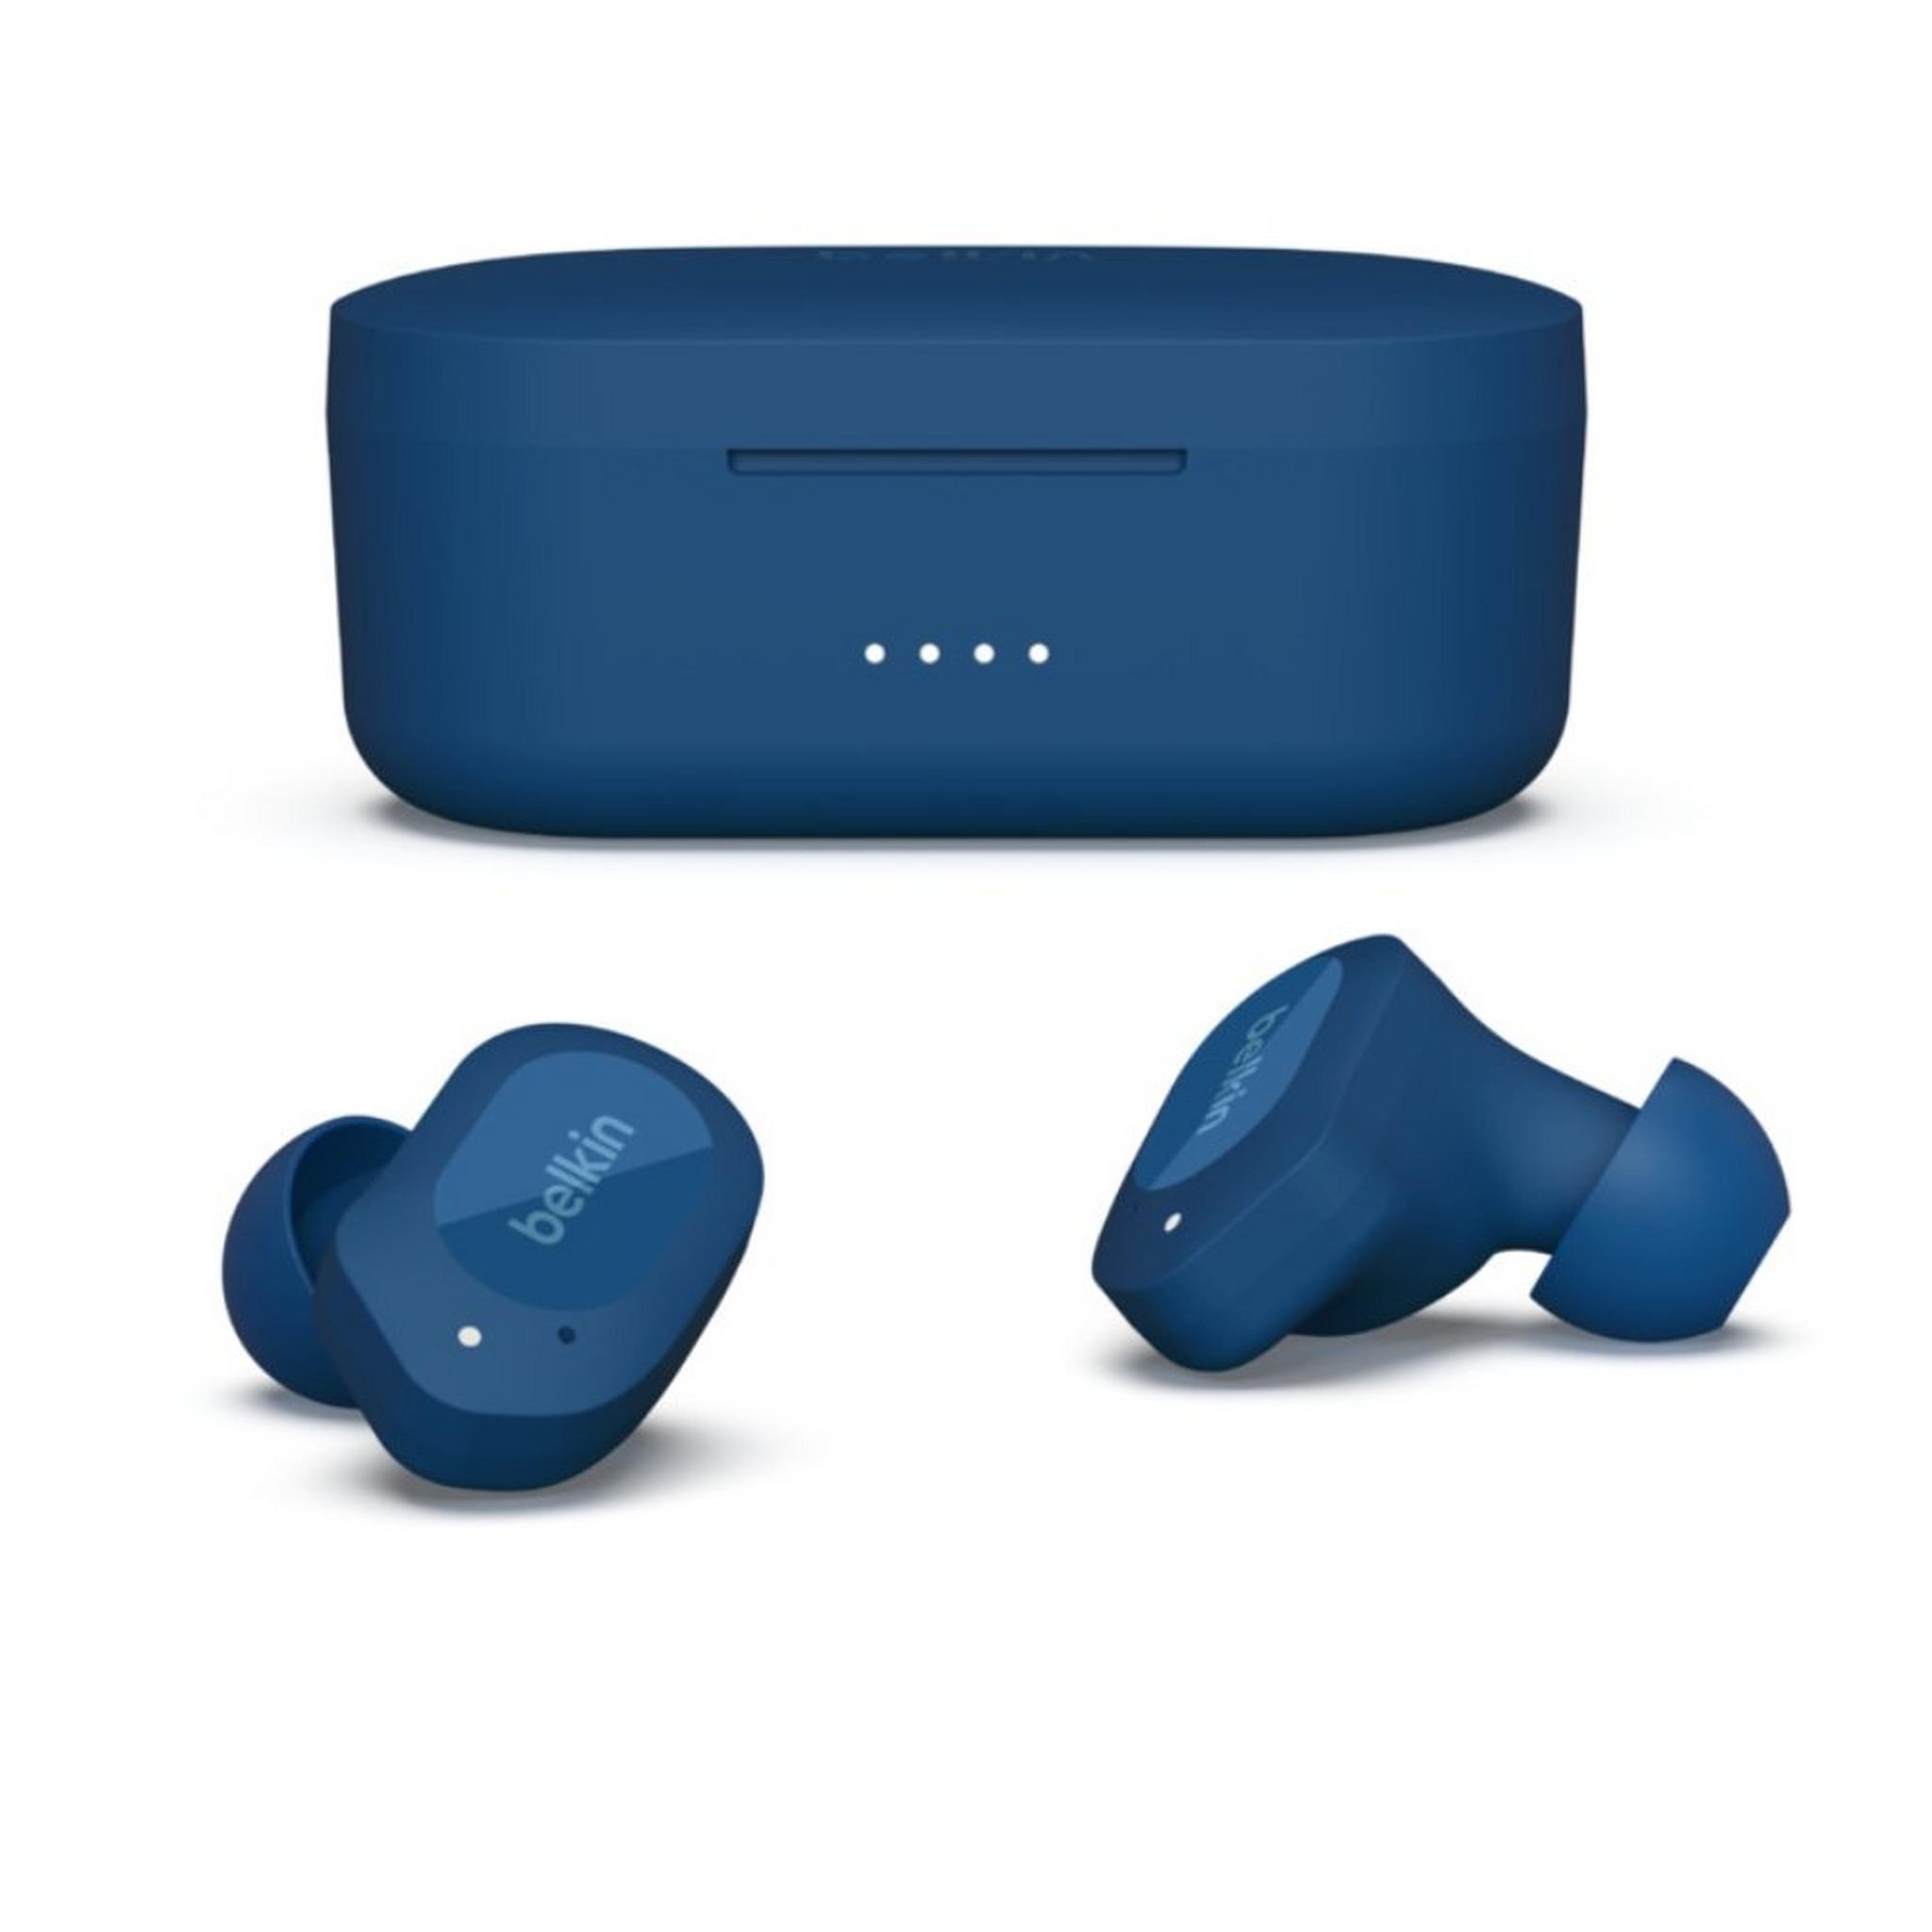 Belkin SoundForm Play True Wireless Earbuds - Blue